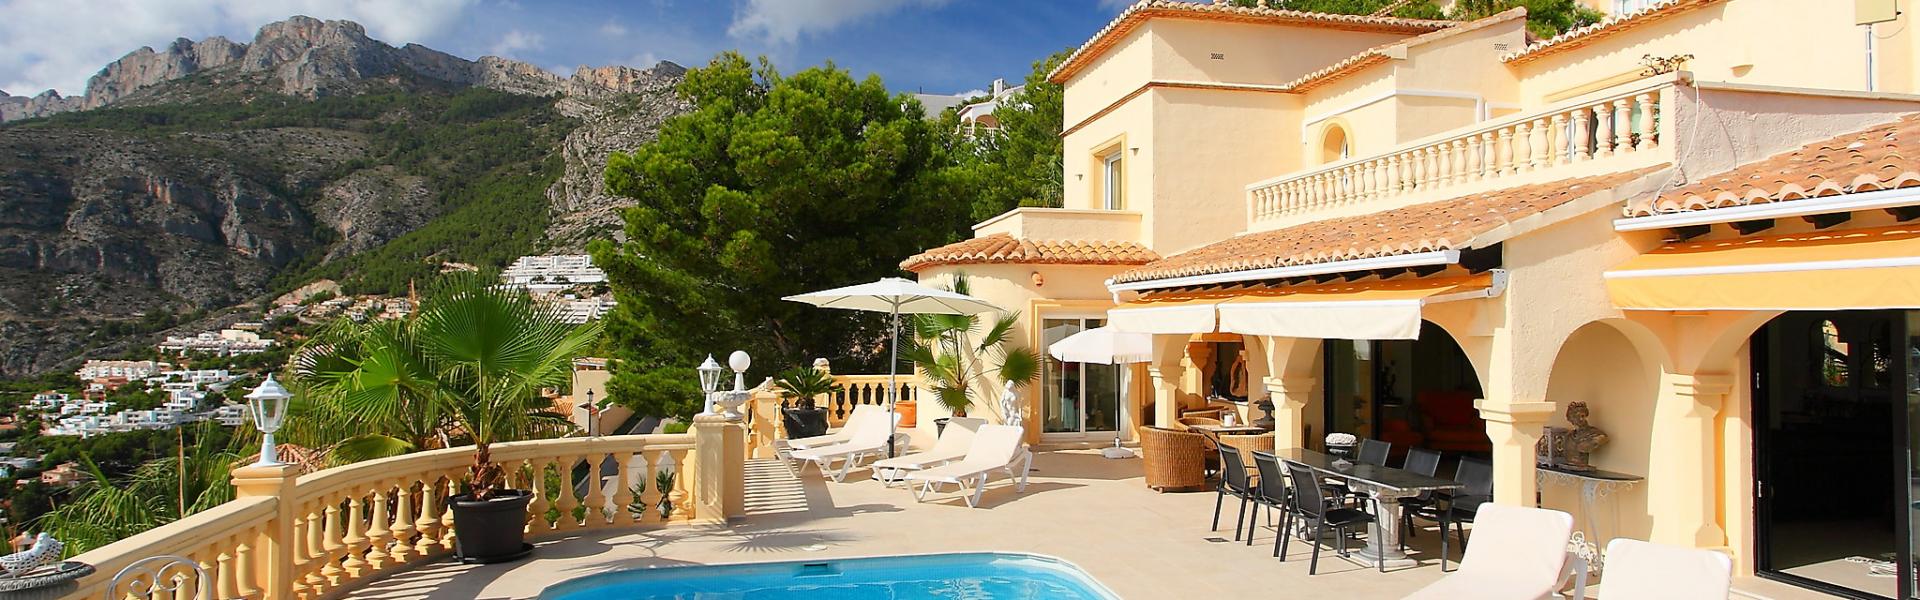 Ferienhaus mit Pool Spanien - HomeToGo